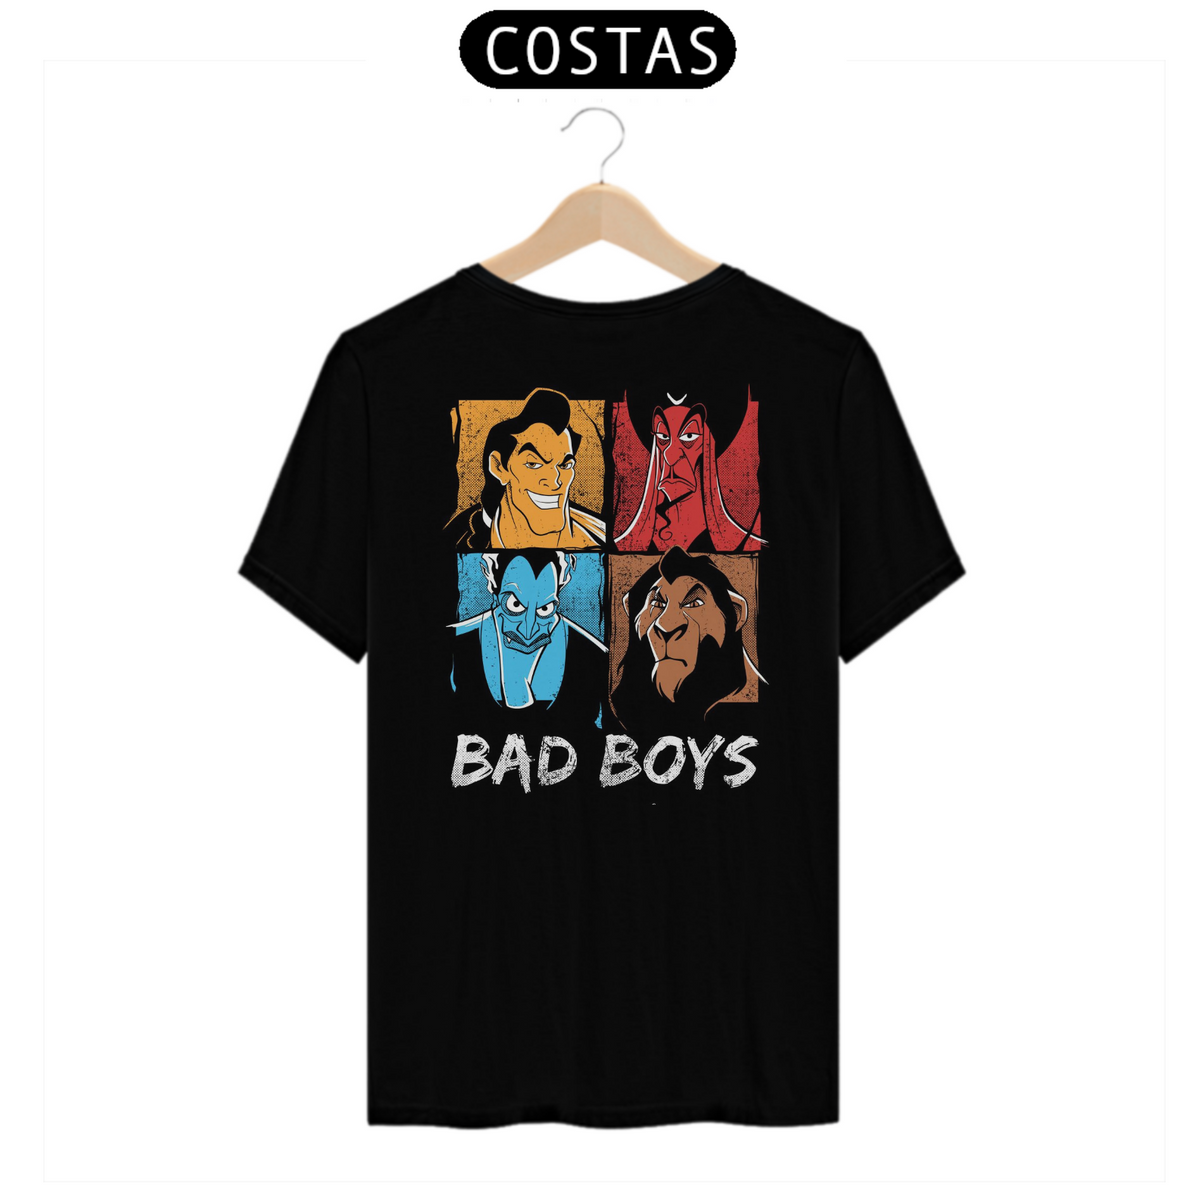 Nome do produto: T-shirt Bad Boys